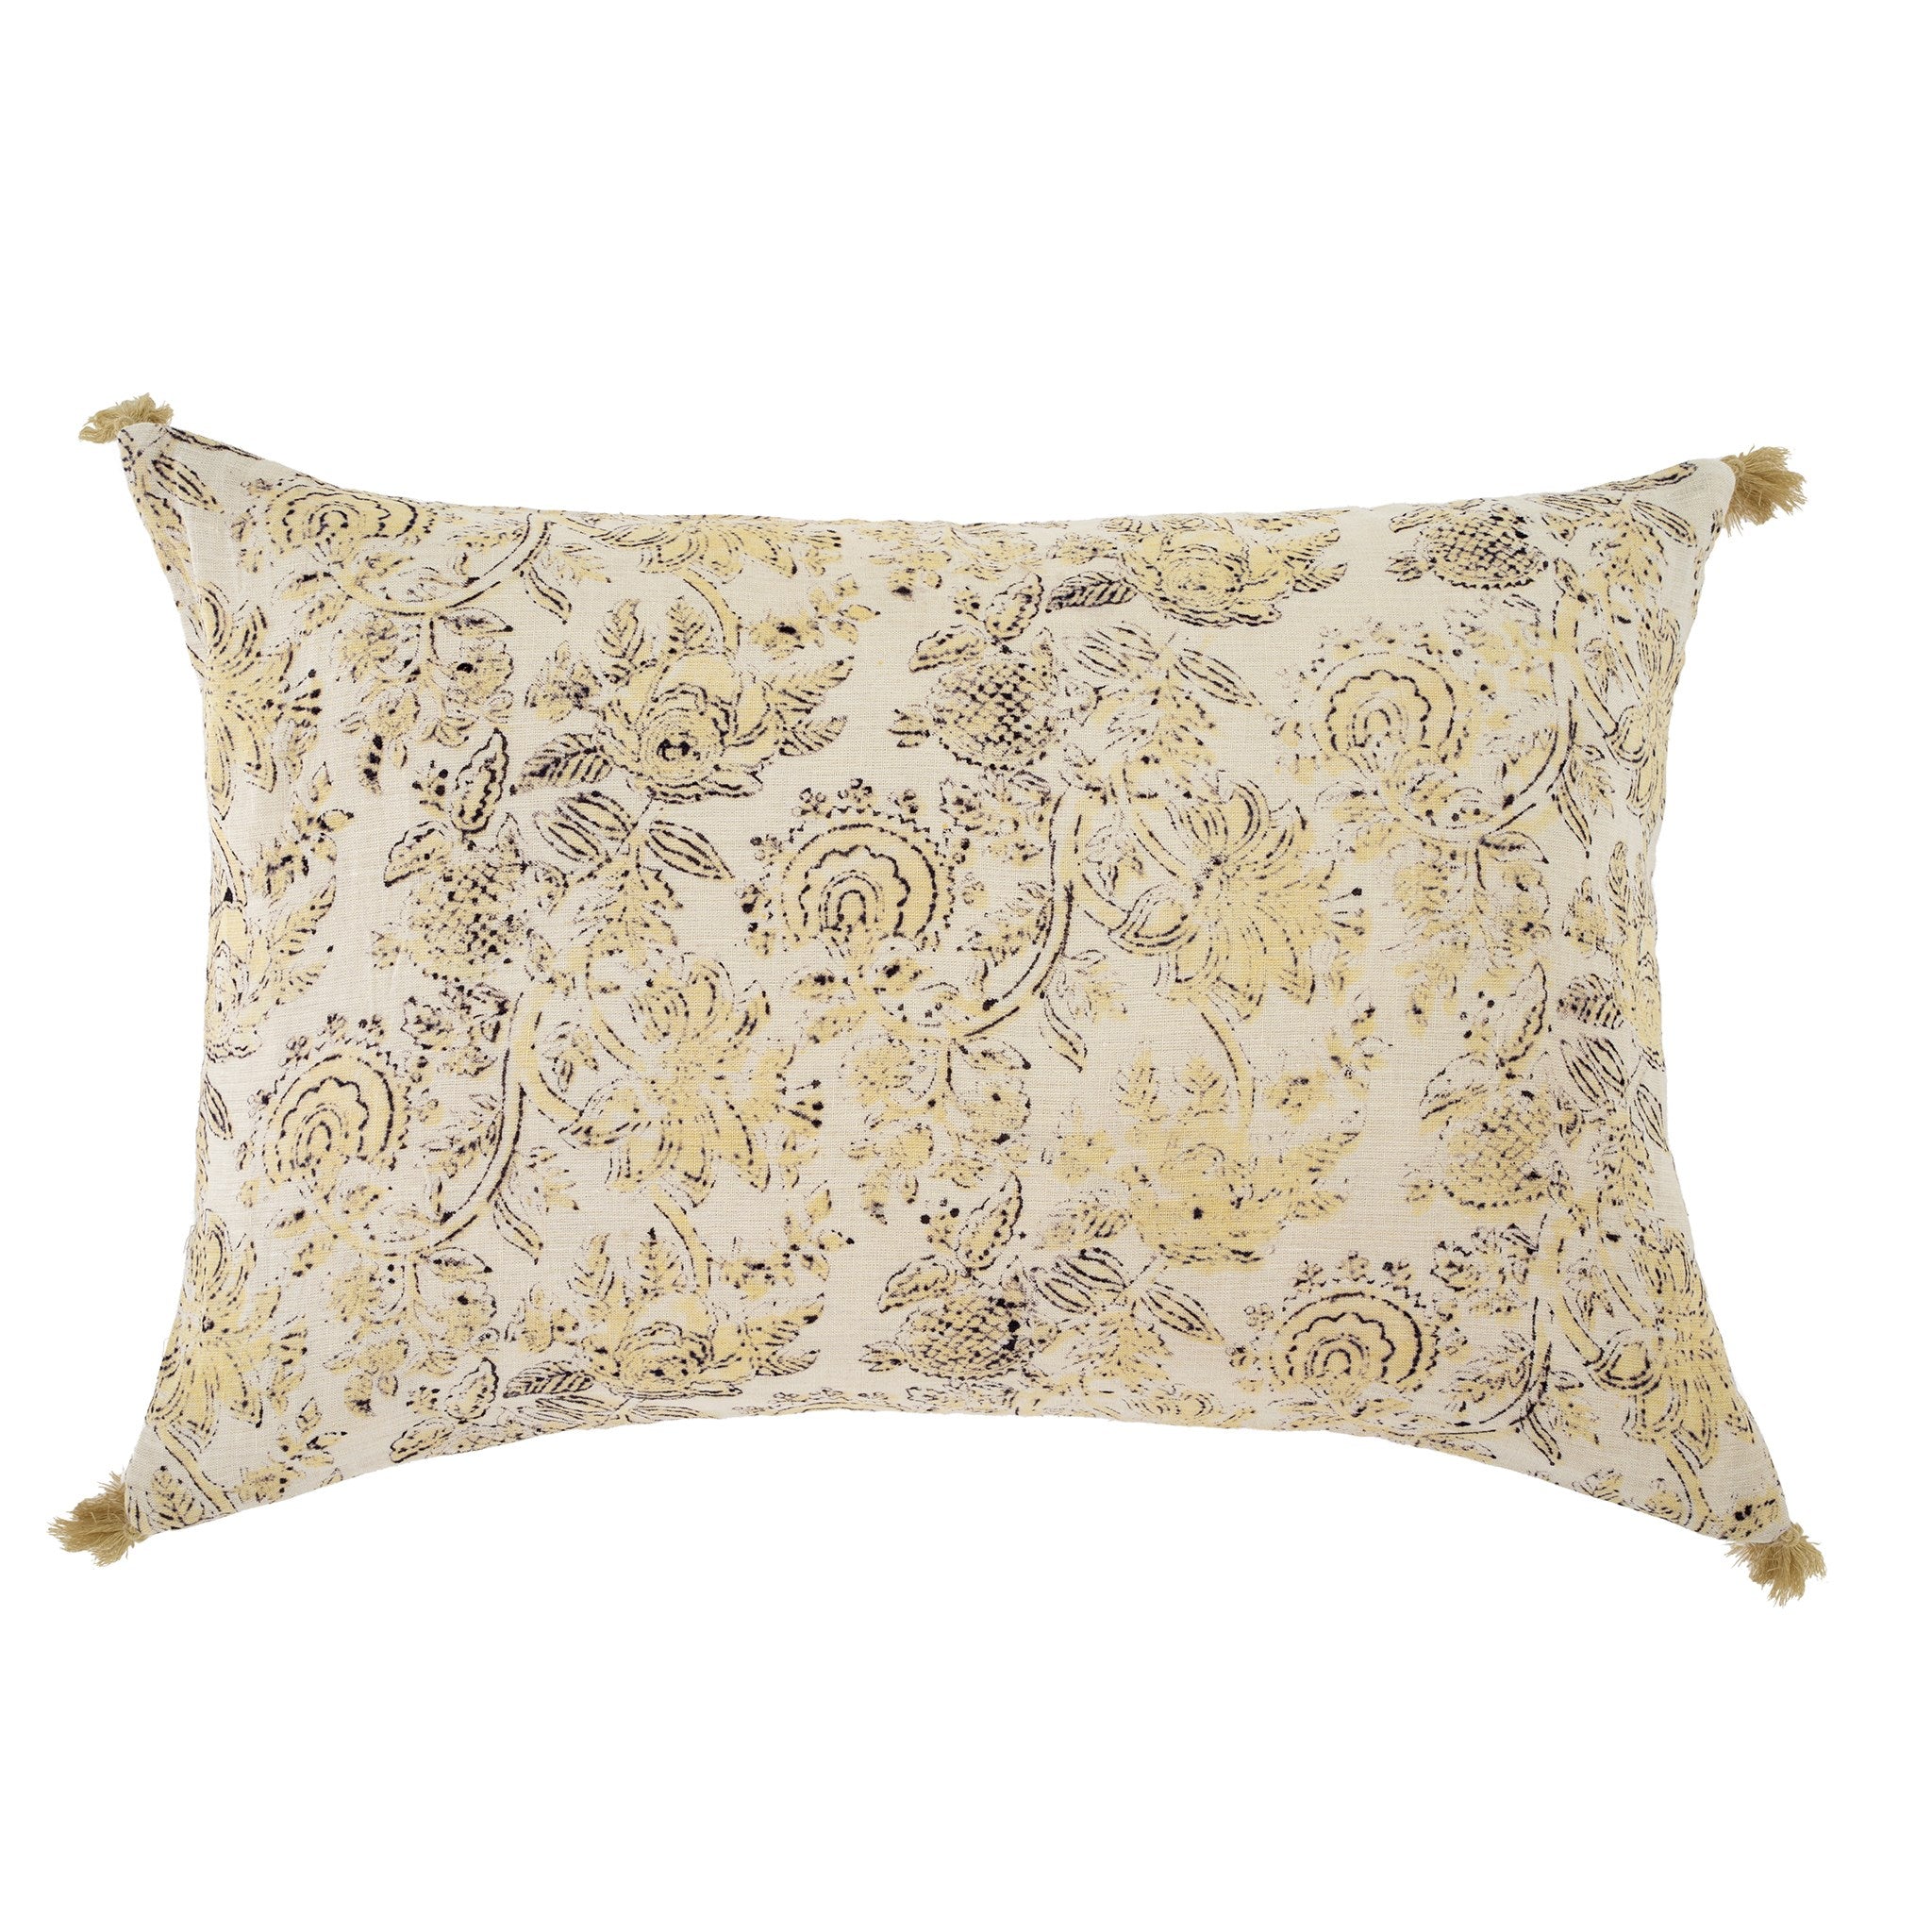 Kyra Linen Pillow 16" x 24"